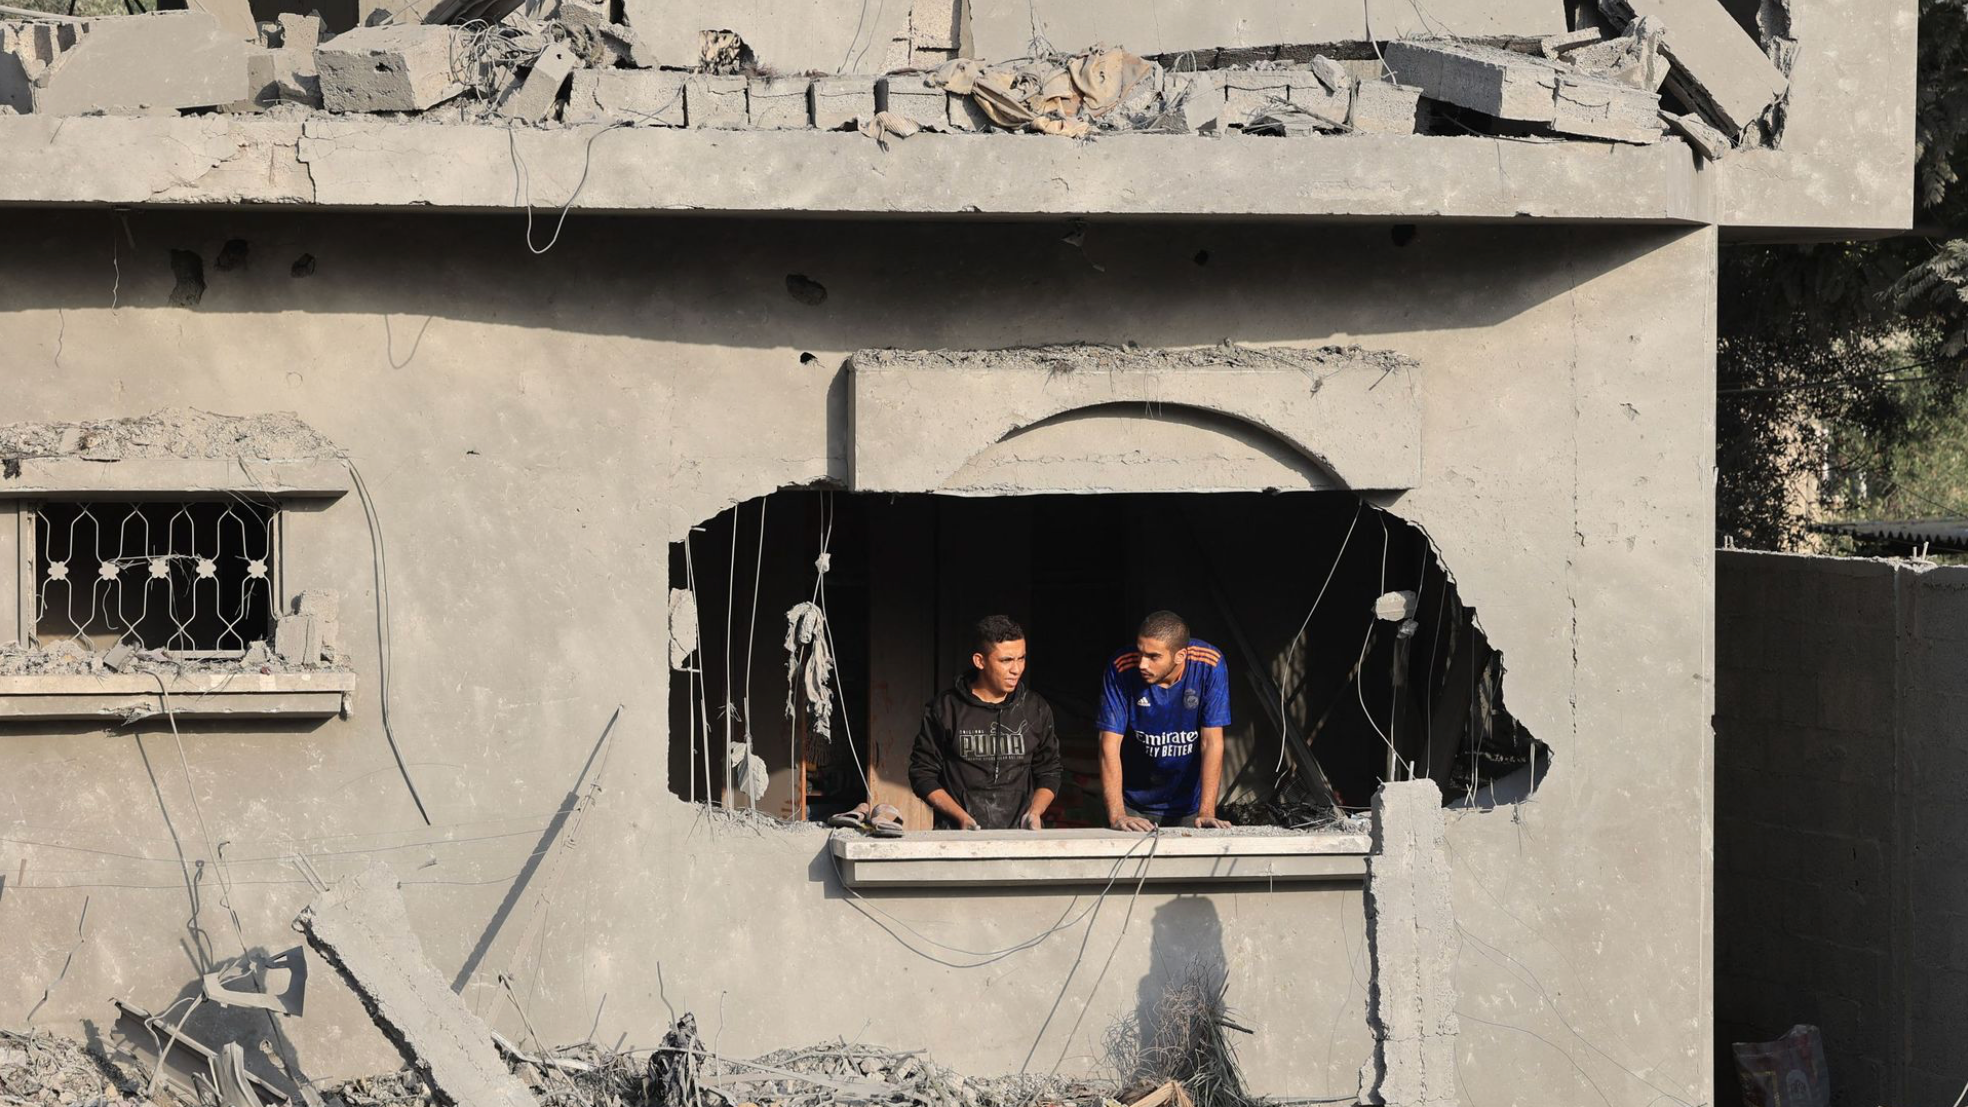 حكومة الاحتلال اتخذت قراراً احتلالياً كبيراً له تداعيات على مستقبل قطاع غزة